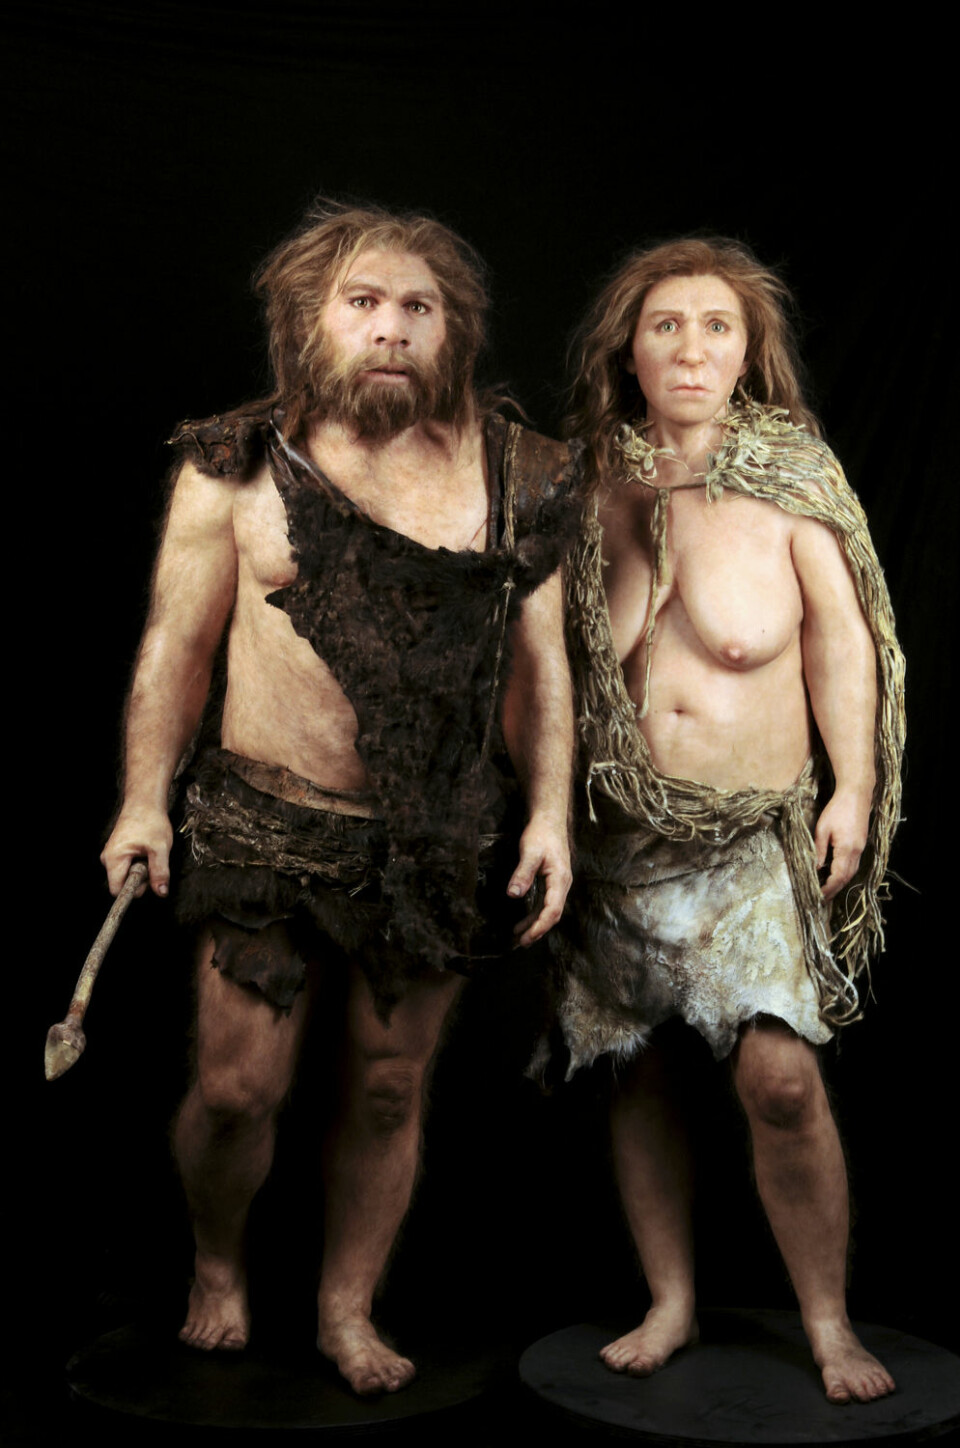 En rekonstruksjon av neandertalkvinne og –mann basert på fossilfunn. Modellen er laget av Elisabeth Daynes fra Daynes Studio i Paris. (Foto: Science Photo Library)